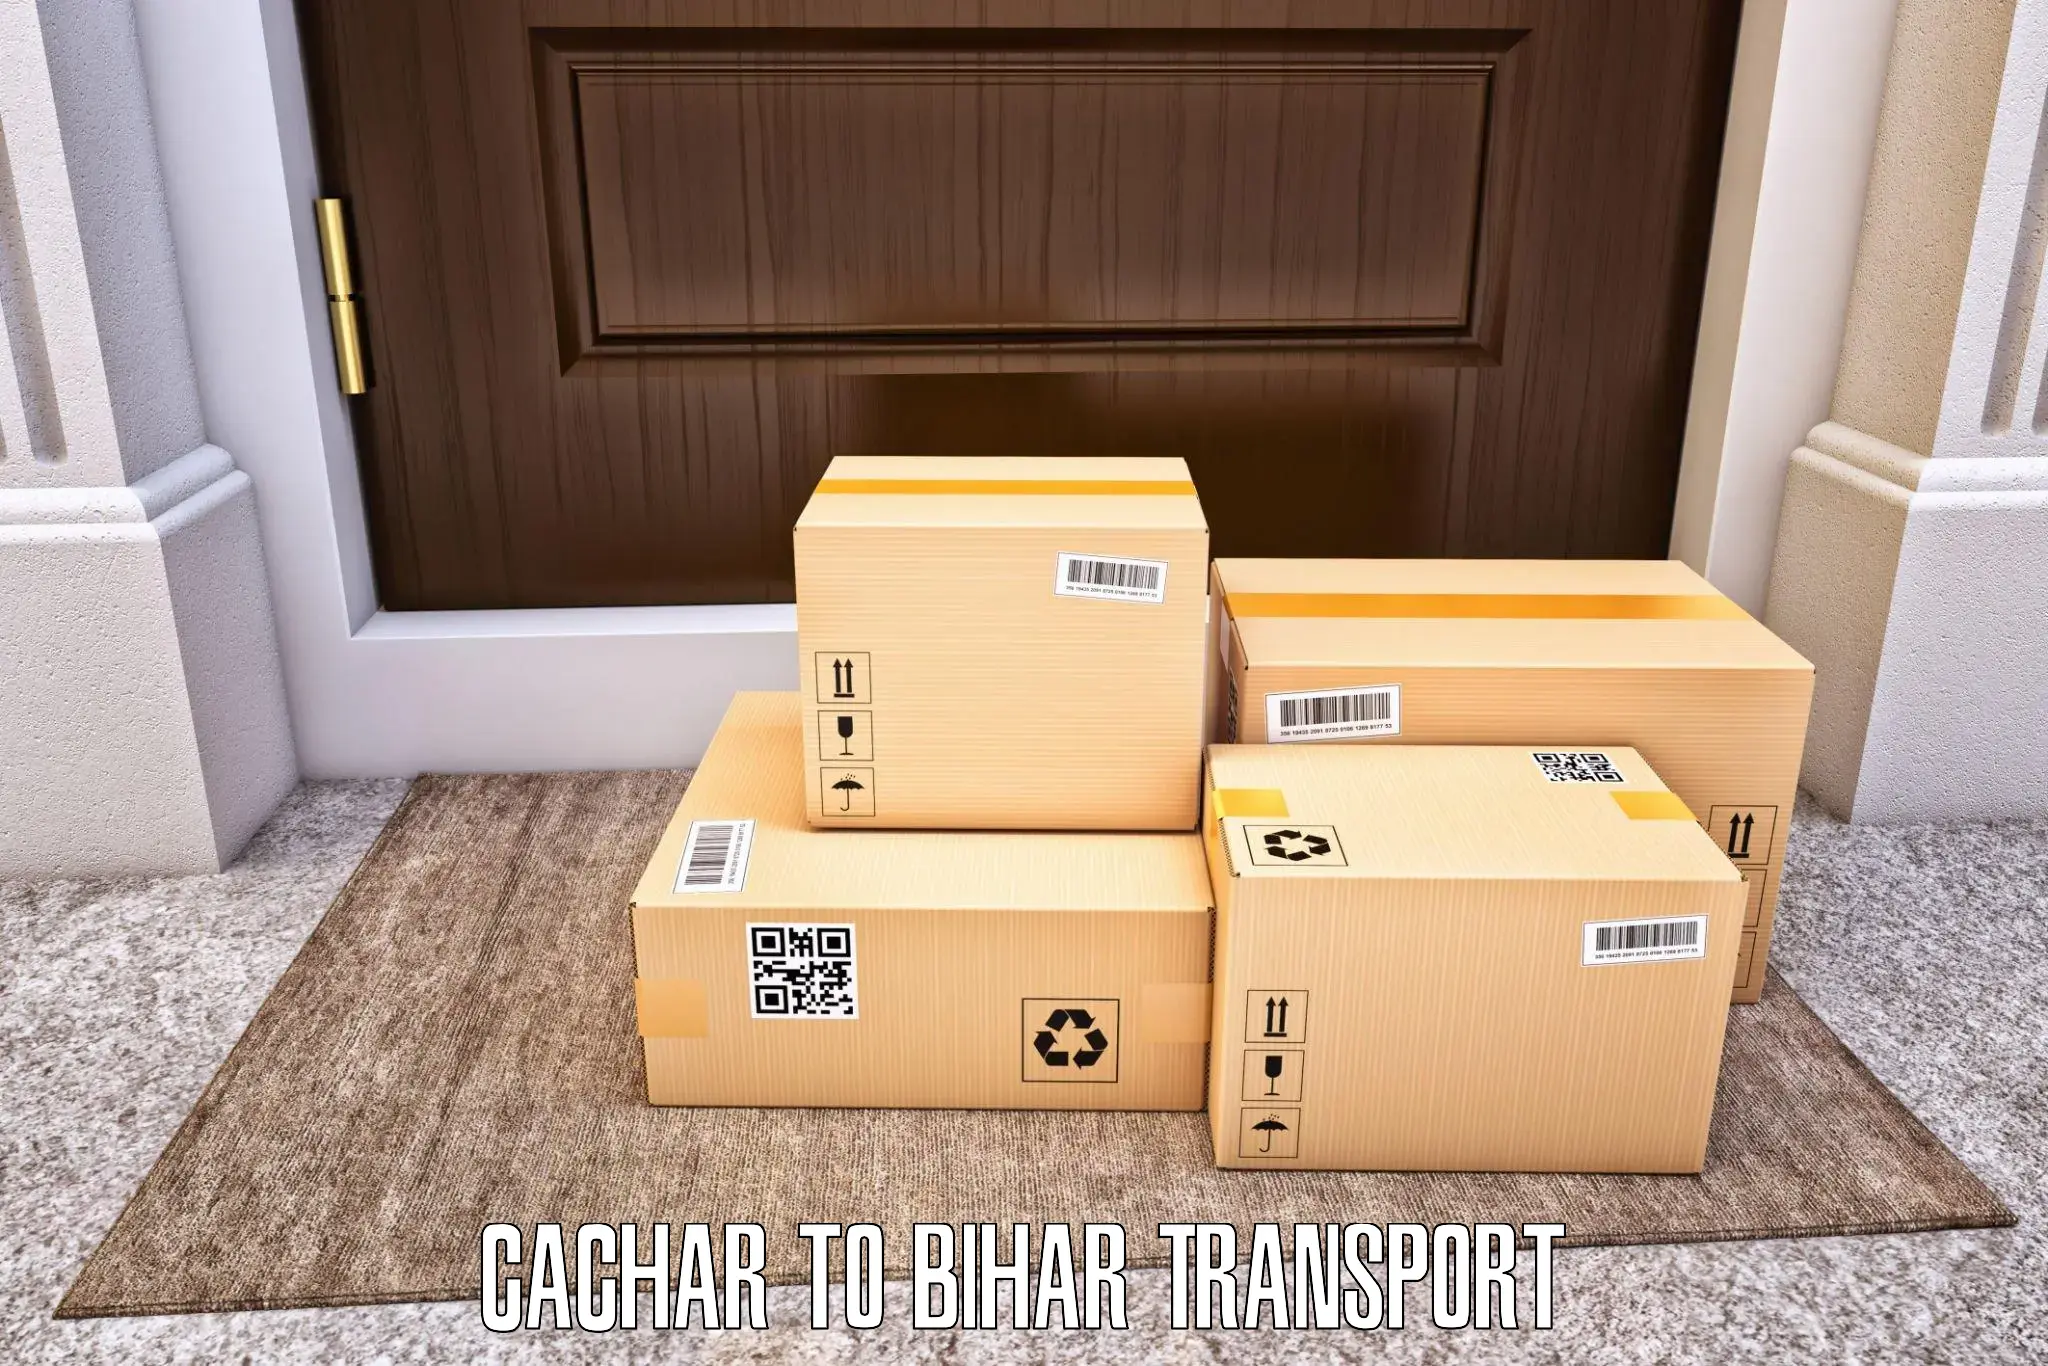 Transport services Cachar to IIIT Bhagalpur